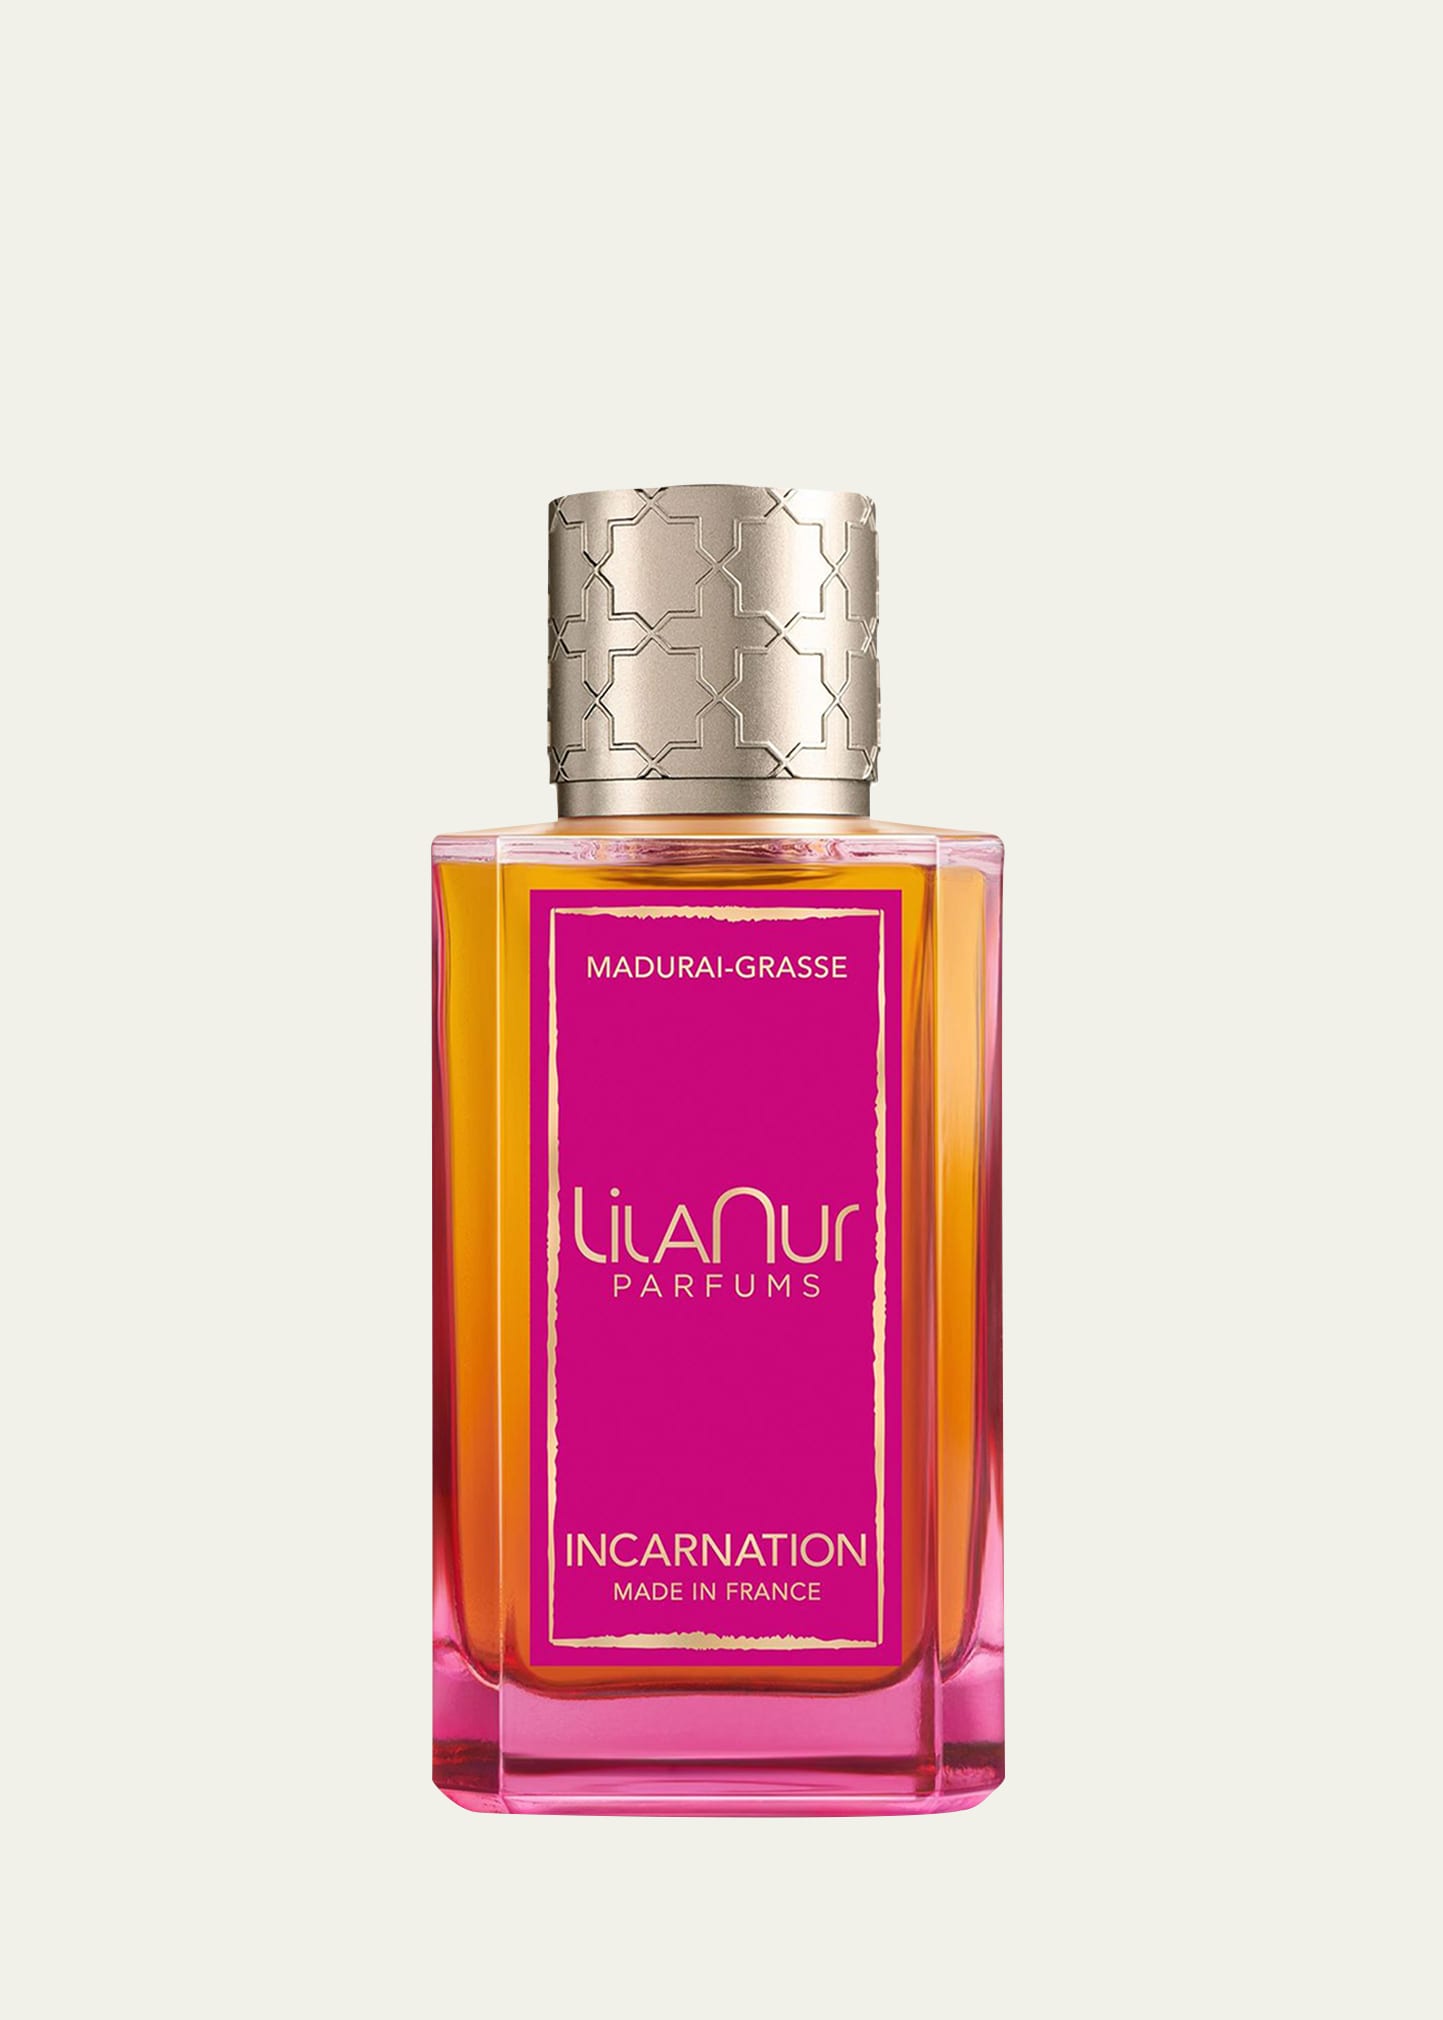 LilaNur Parfums Incarnation Eau de Parfum, 3.4 oz.